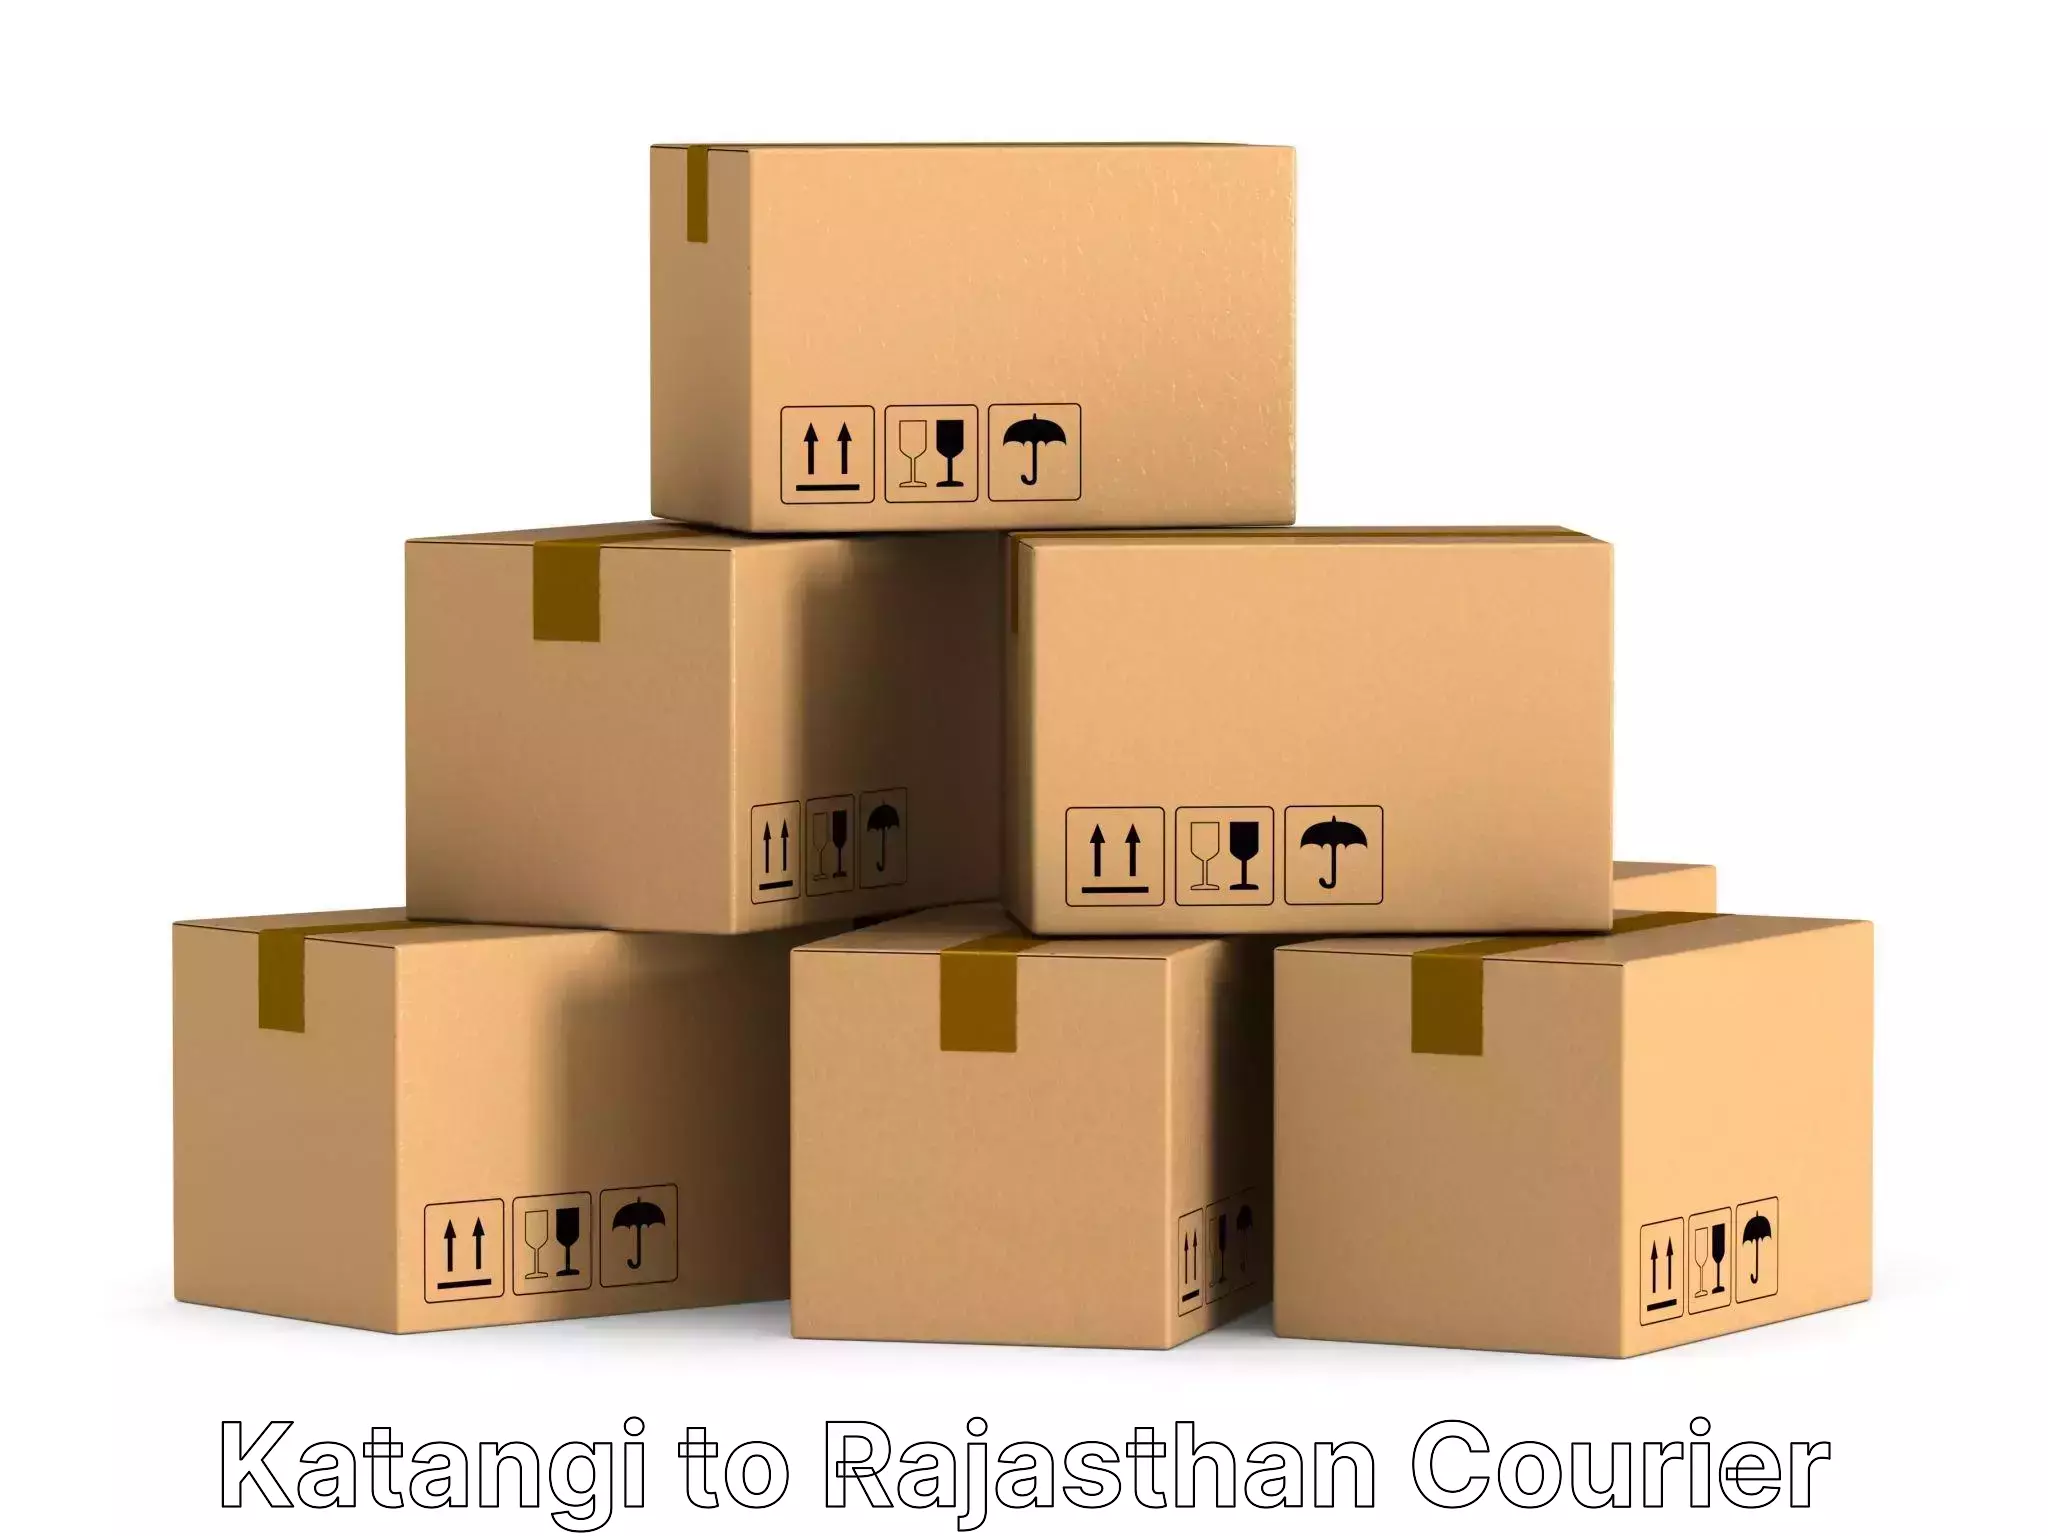 Furniture moving experts Katangi to Keshoraipatan